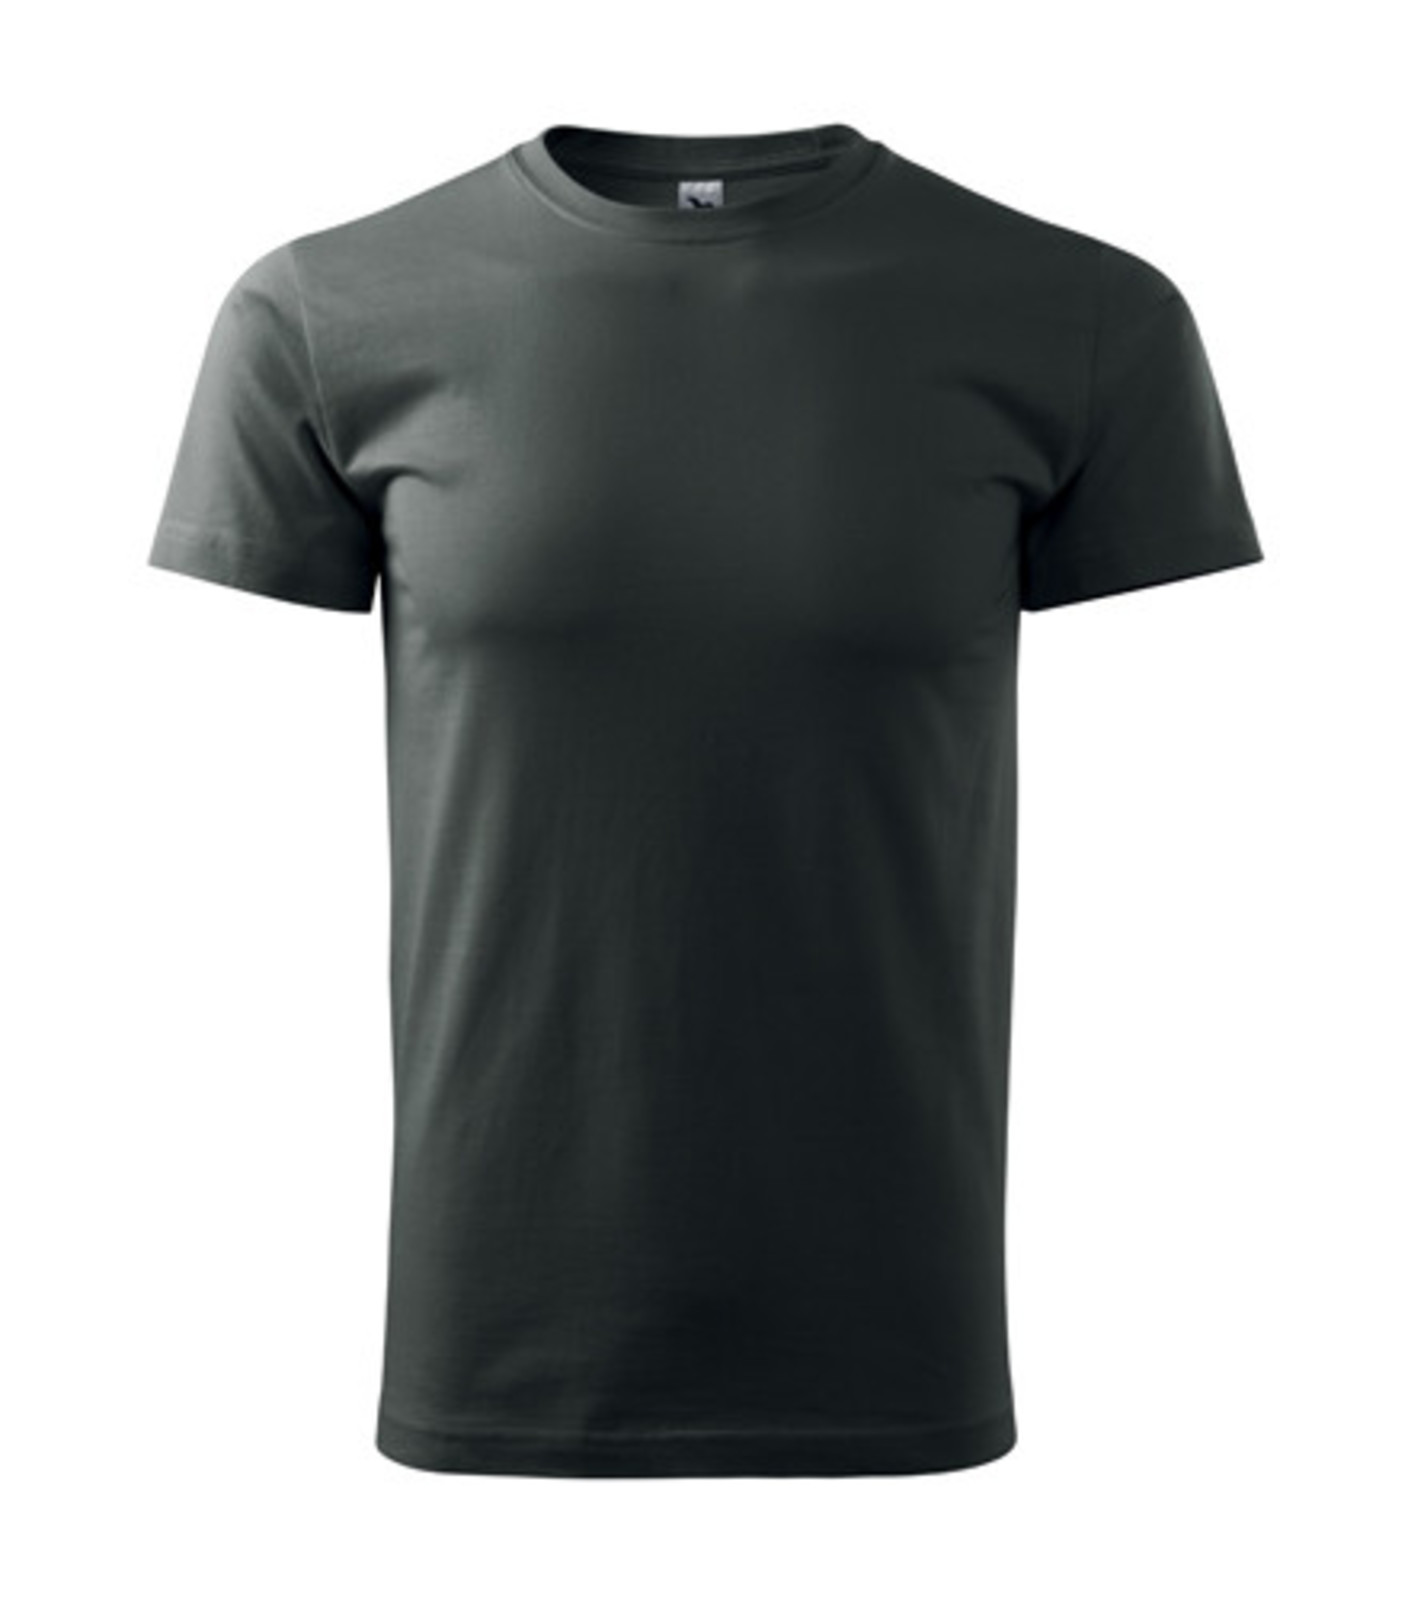 Pánske tričko Malfini Basic 129 - veľkosť: XL, farba: tmavá bridlica